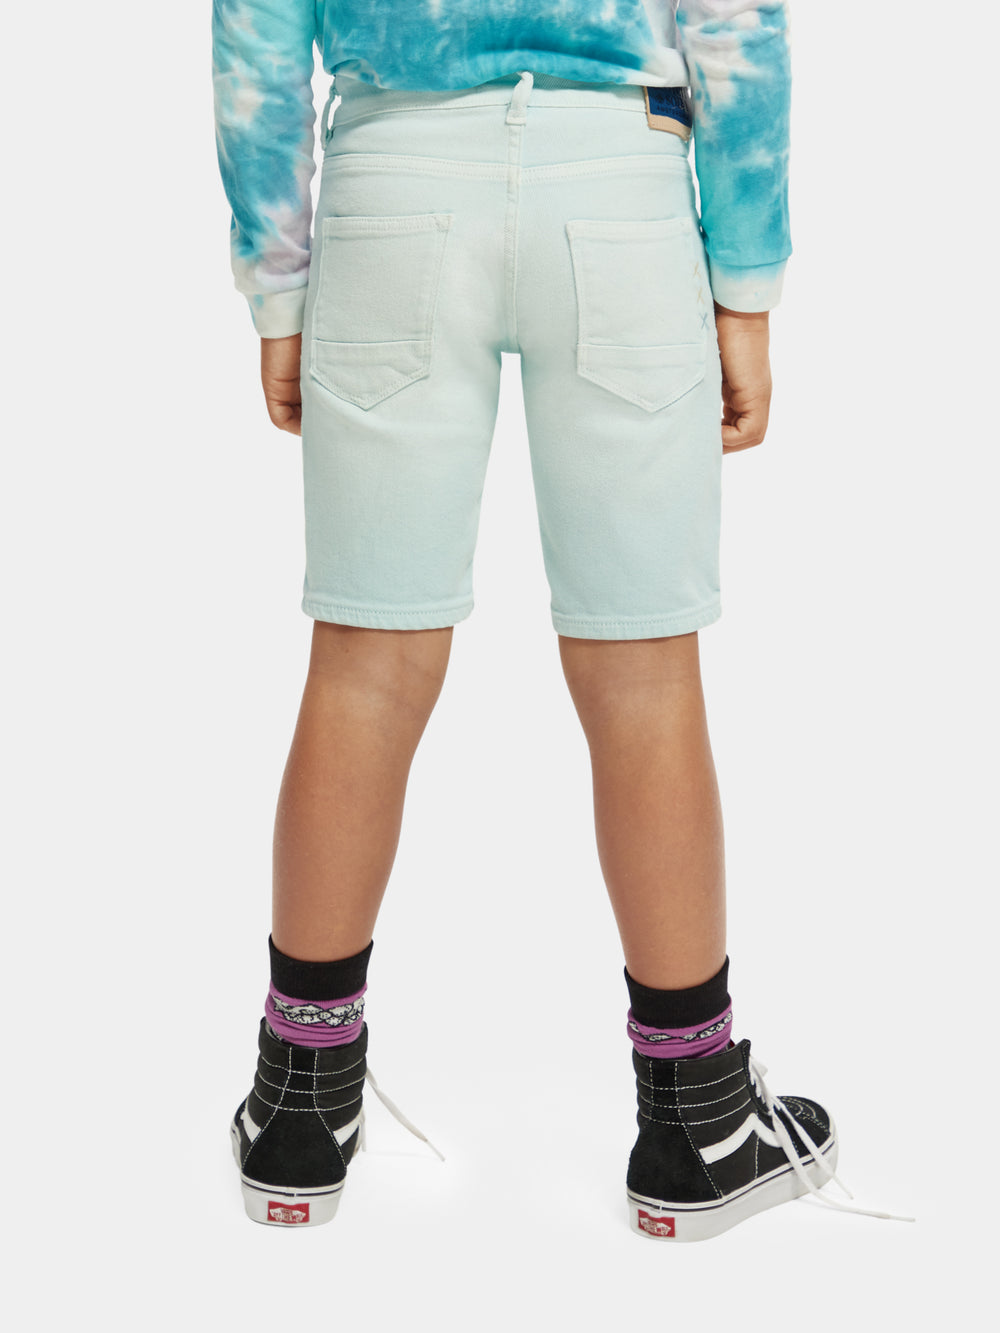 Strummer regular slim-fit garment-dyed shorts - Scotch & Soda AU